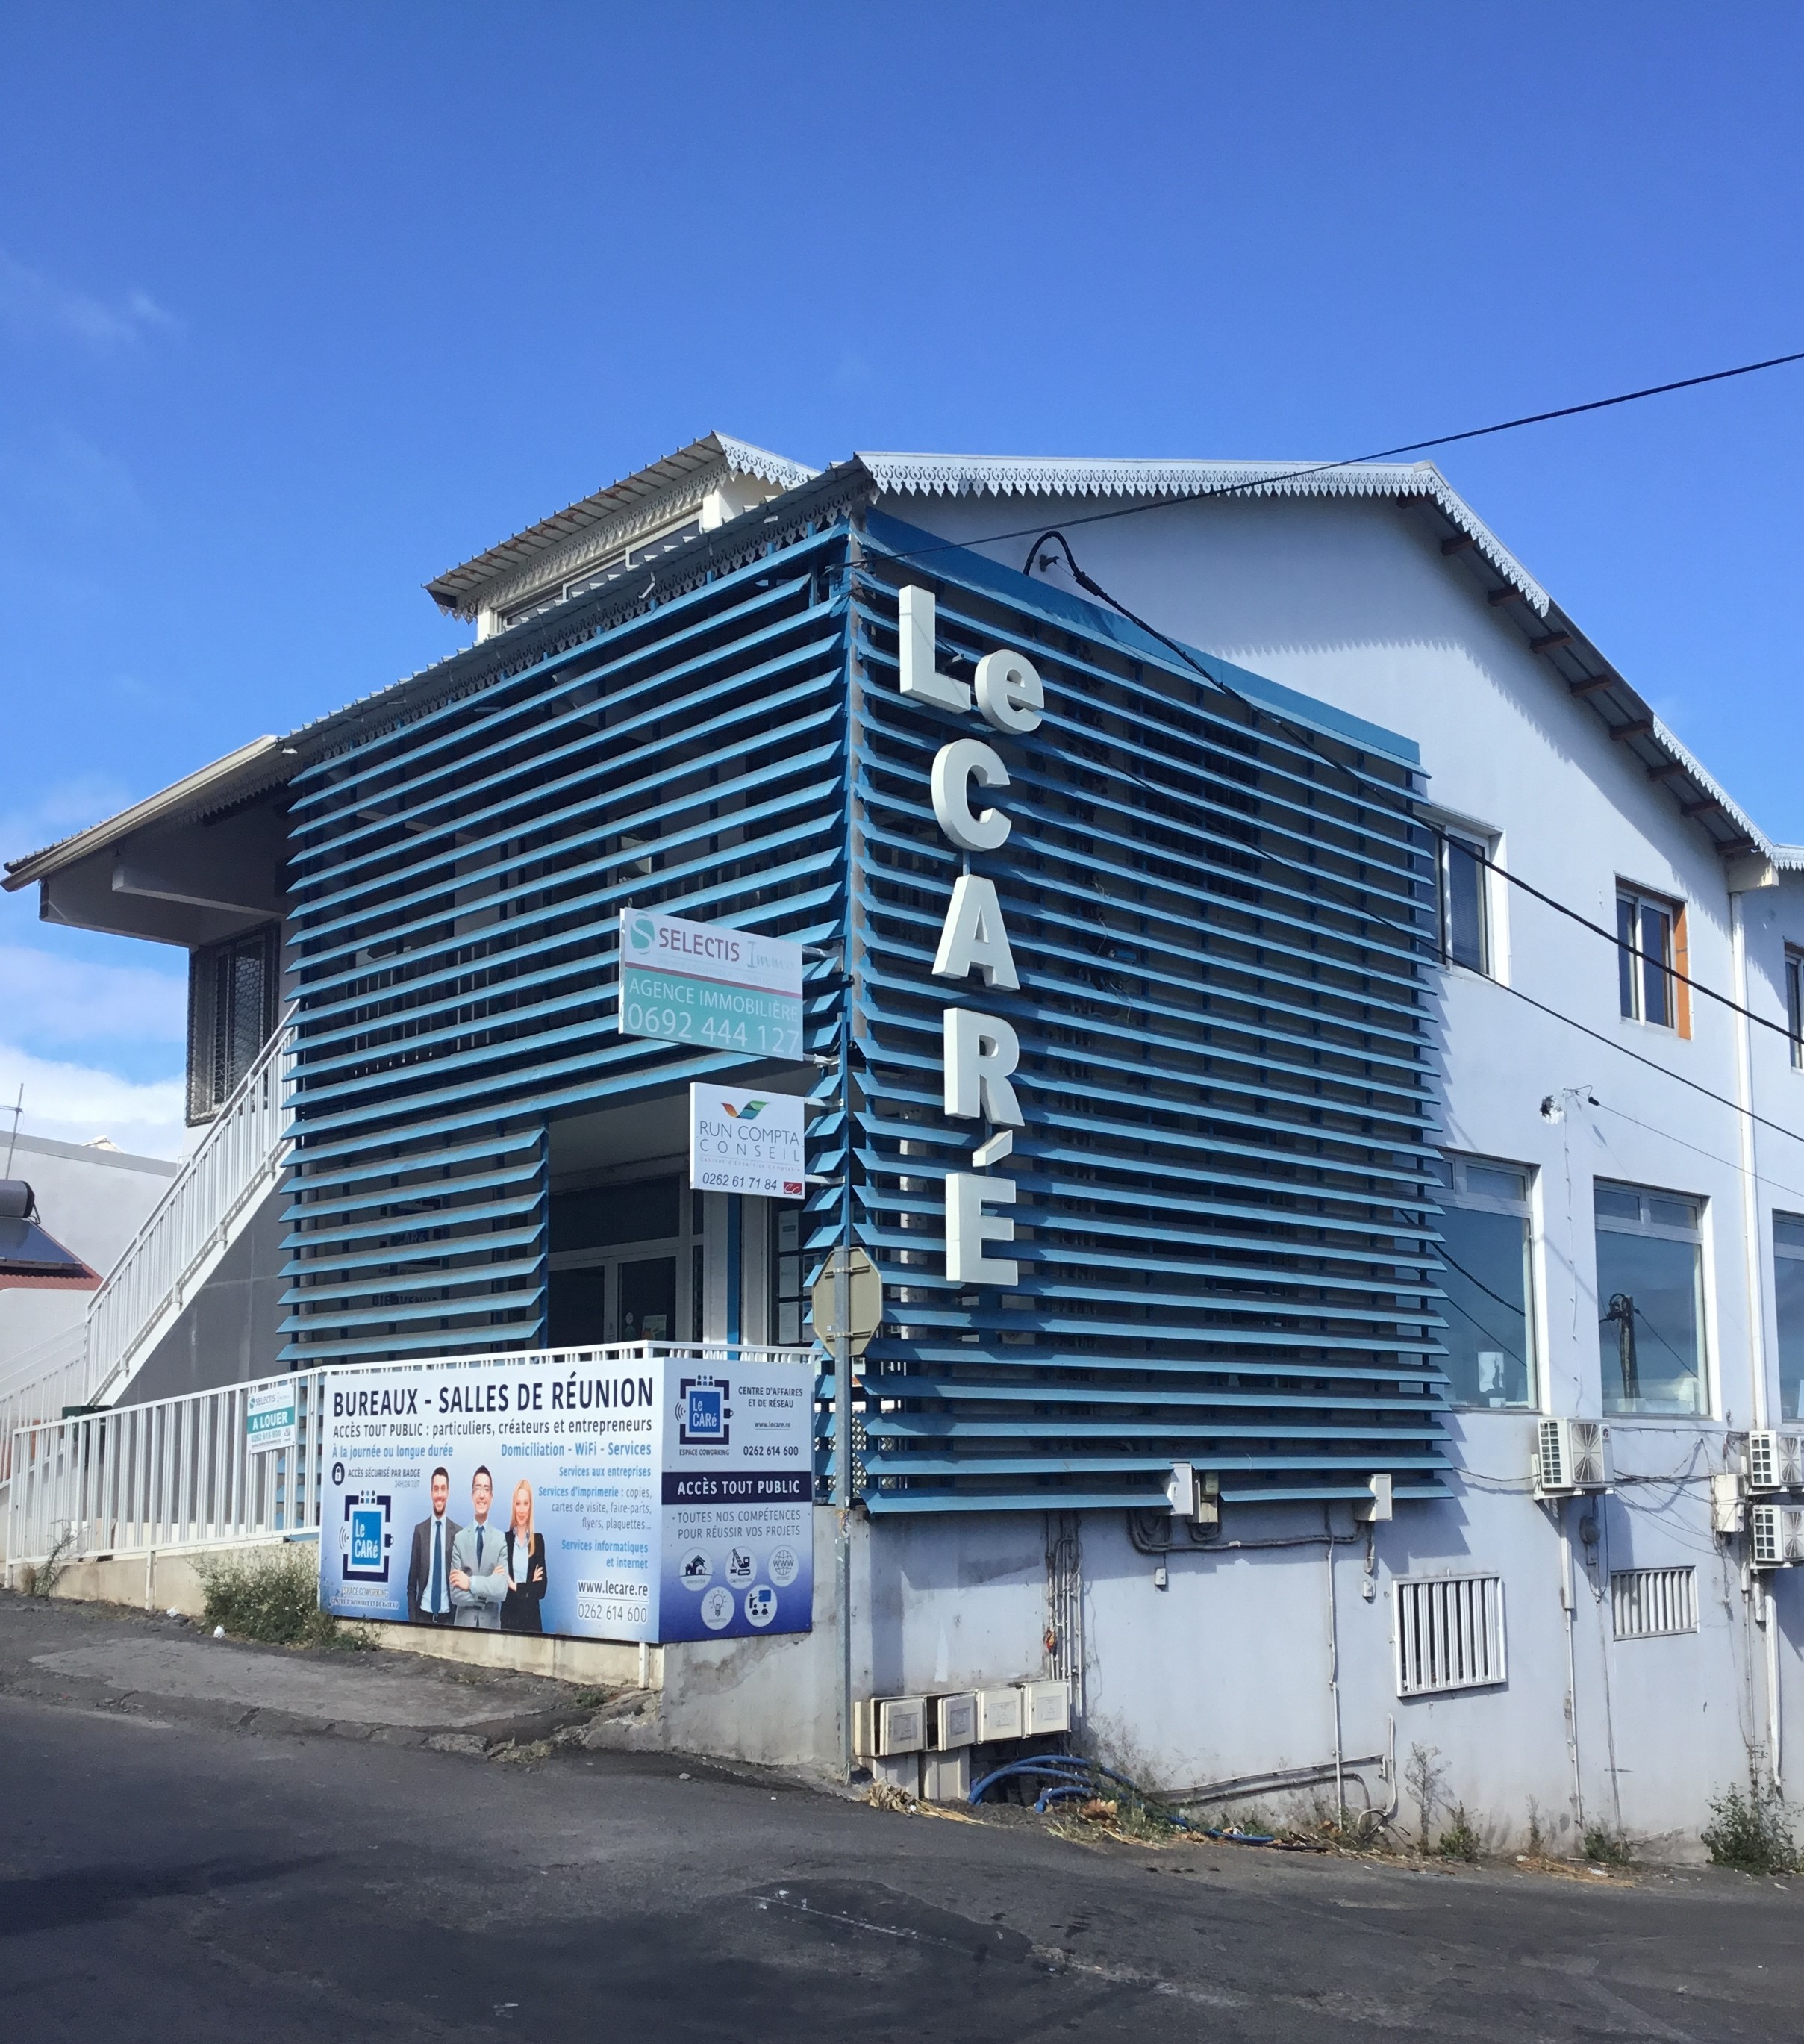 Le CARé Piton Saint-Leu, Centre domiciliataire agréé par la Région Réunion